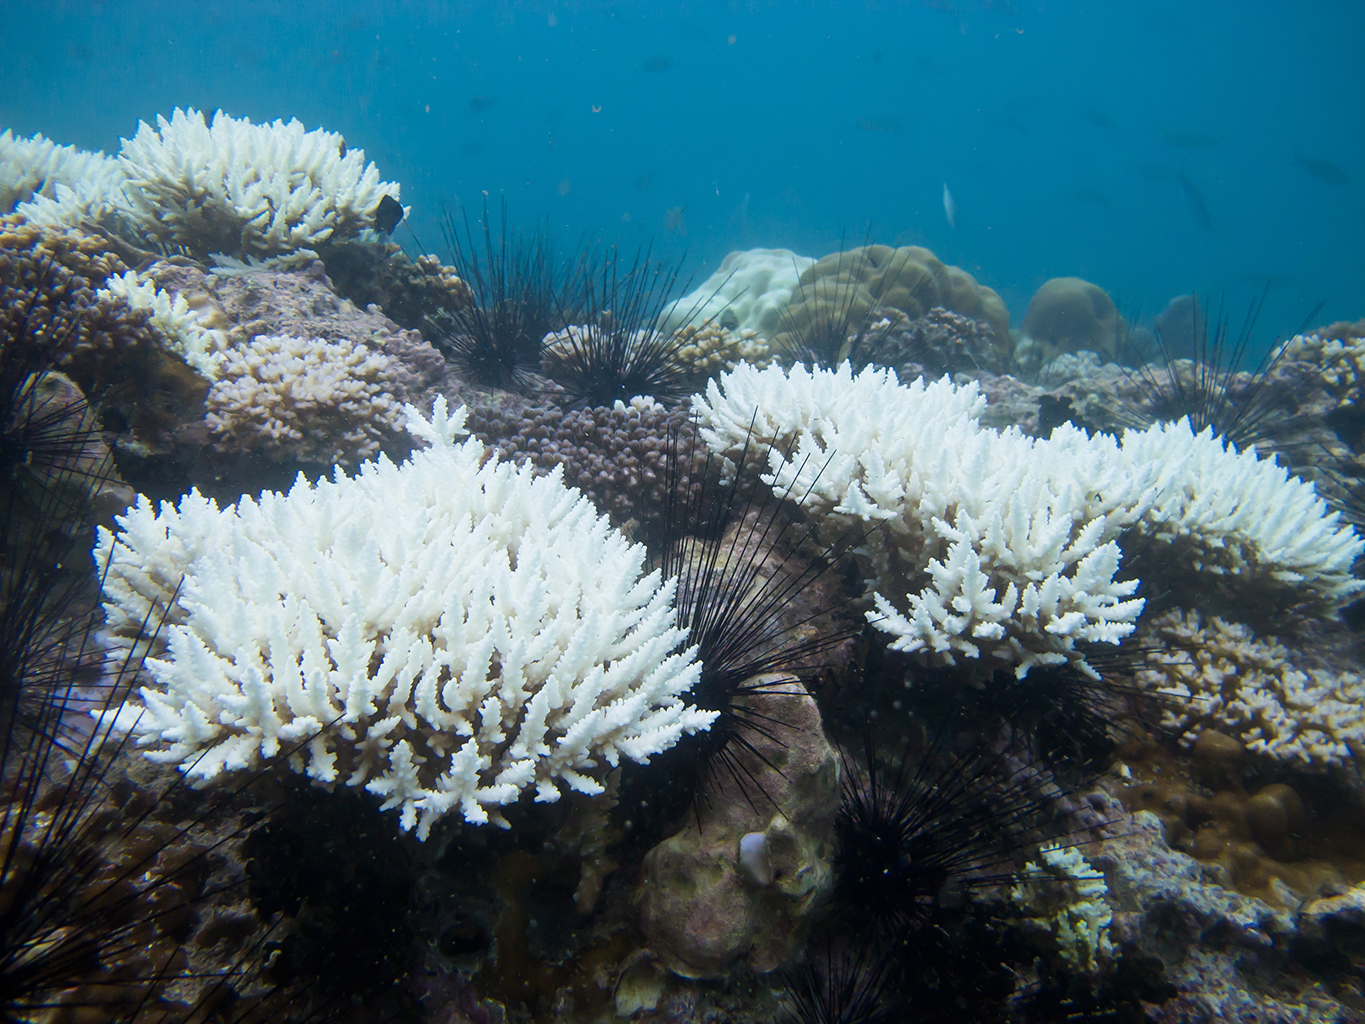 วิกฤต ! ทั่วโลกกำลังเผชิญปรากฏการณ์ 'ปะการังฟอกขาว' ครั้งรุนแรงในรอบ 10 ปี